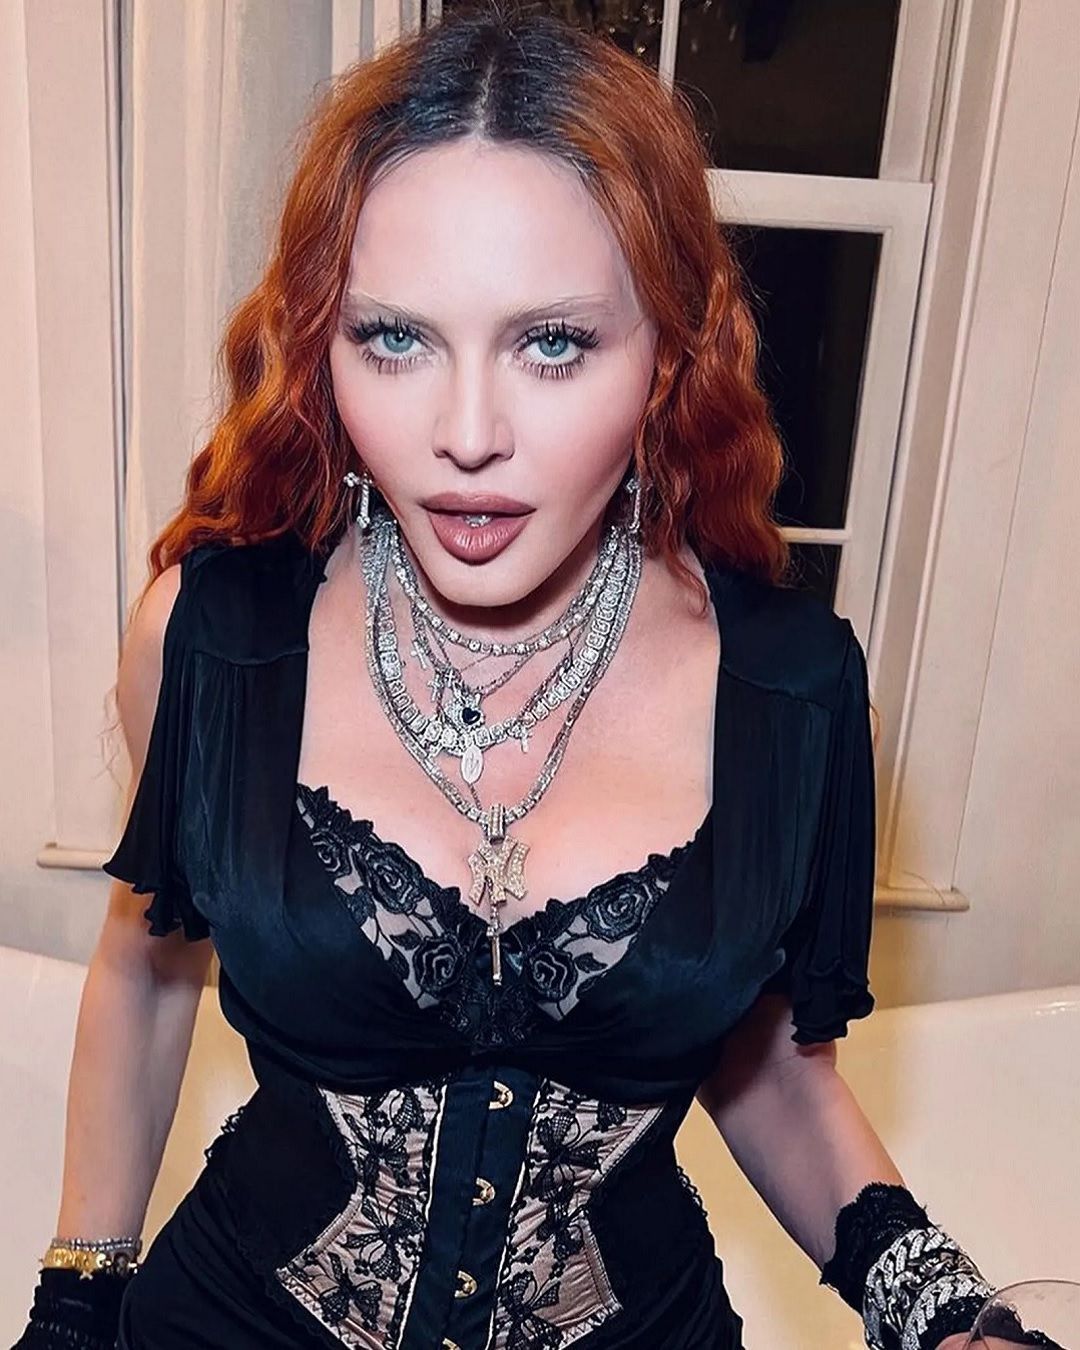 Vetements habillera Madonna lors de sa prochaine tournée Guram Gvasalia a travaillé en étroite collaboration avec la star sur les nouveaux looks